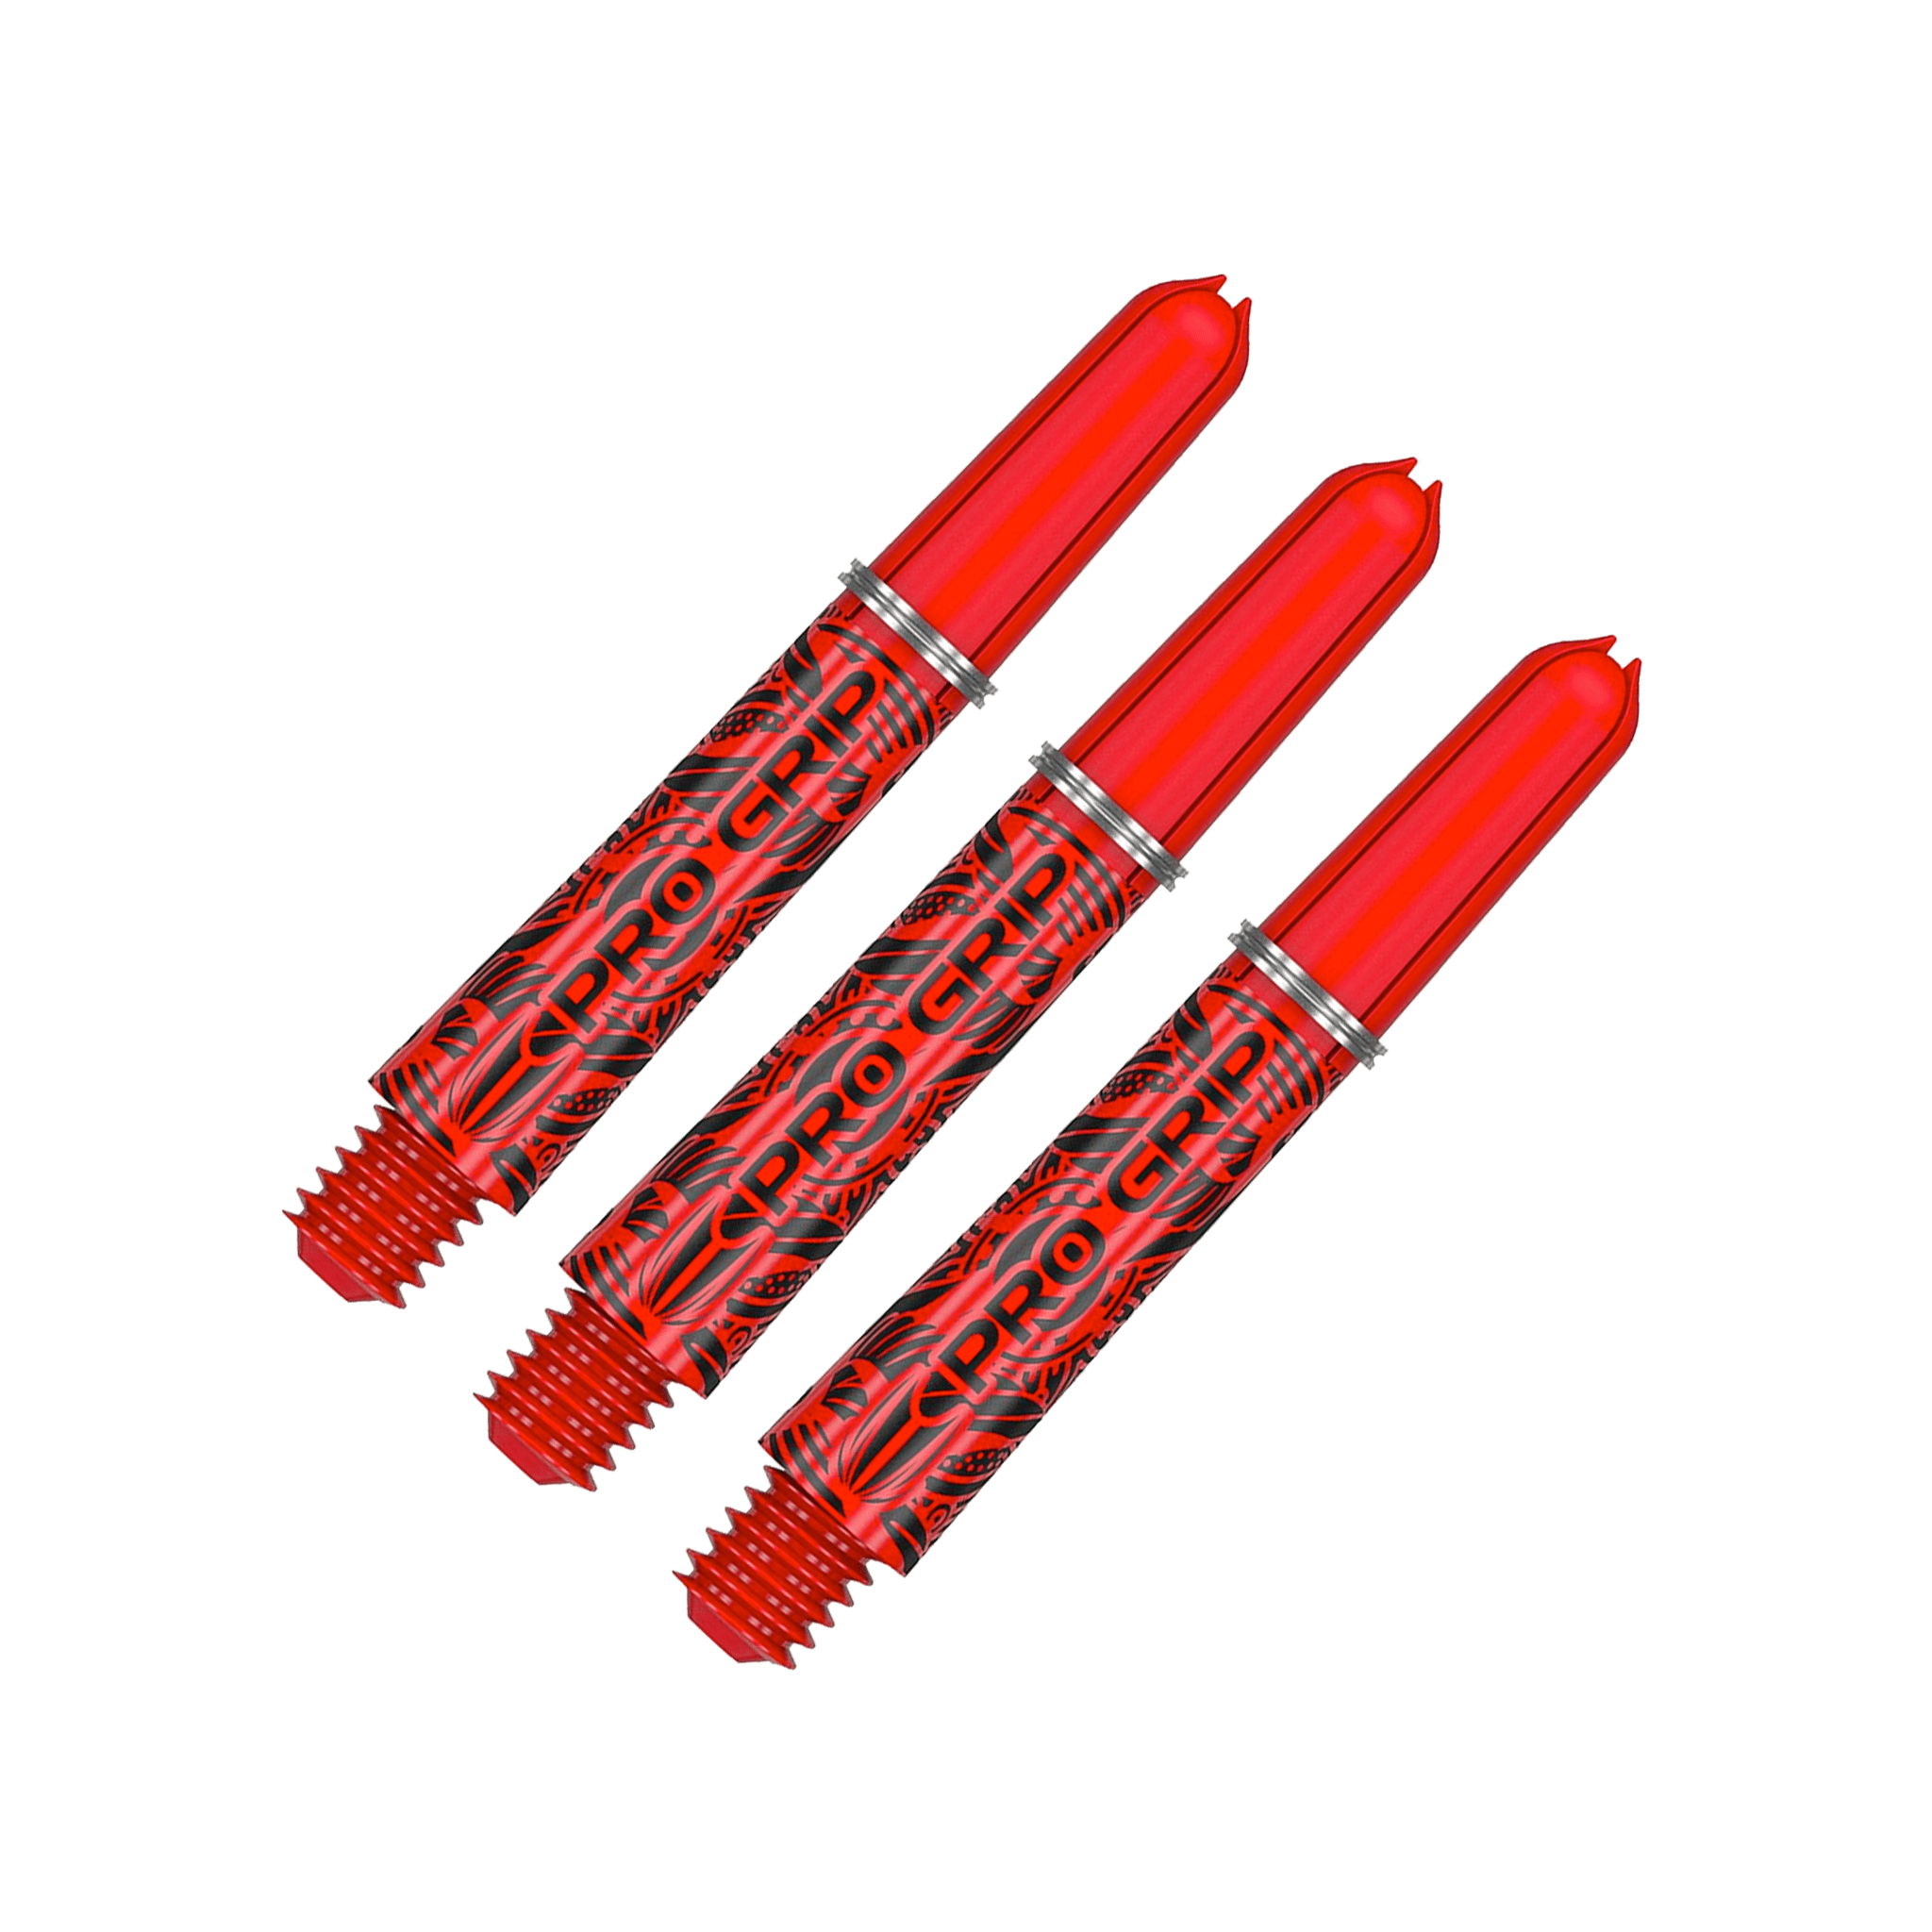 Target Pro Grip Ink Short (34mm) Nylon Dart Shafts Red Shafts